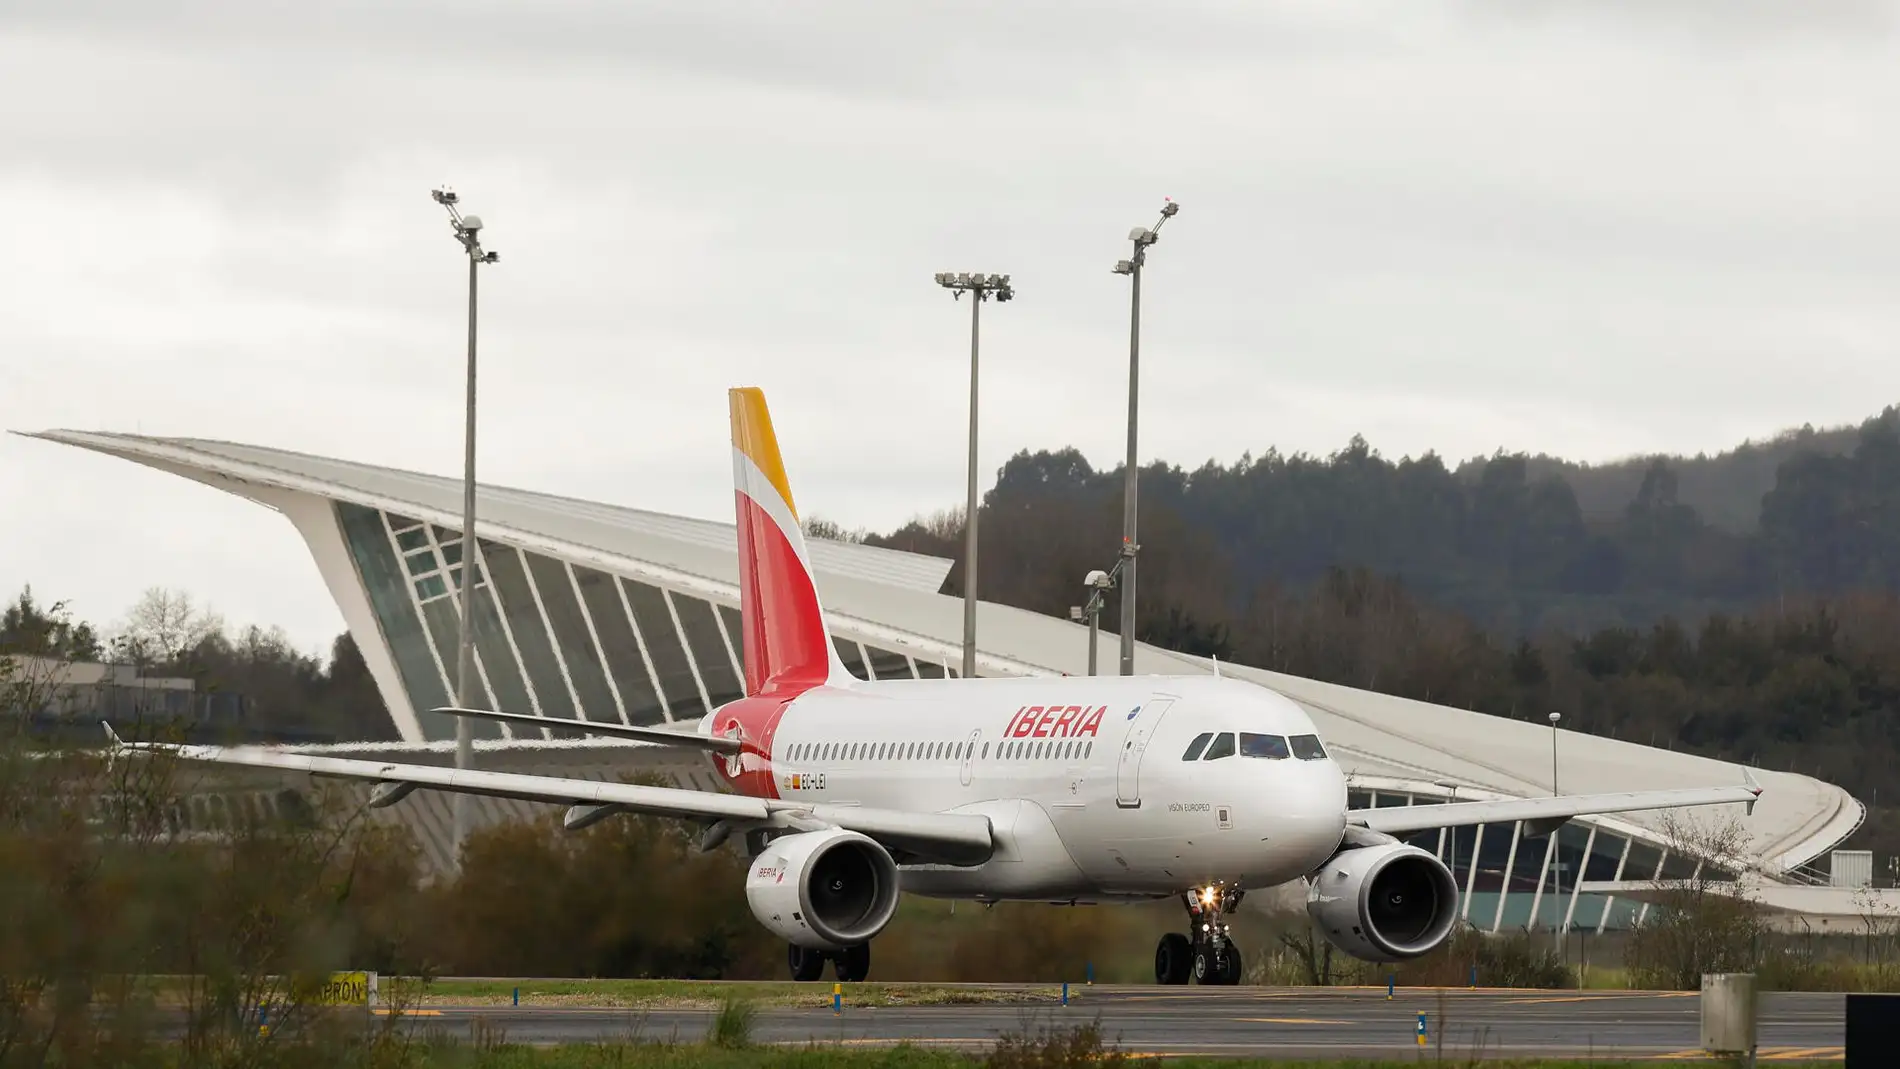 Imagen tomada el pasado 01 de diciembre de un avión de Iberia mientras se dirige a la pista de despegue en el Aeropuerto de Bilbao en Loiu (Bizkaia)